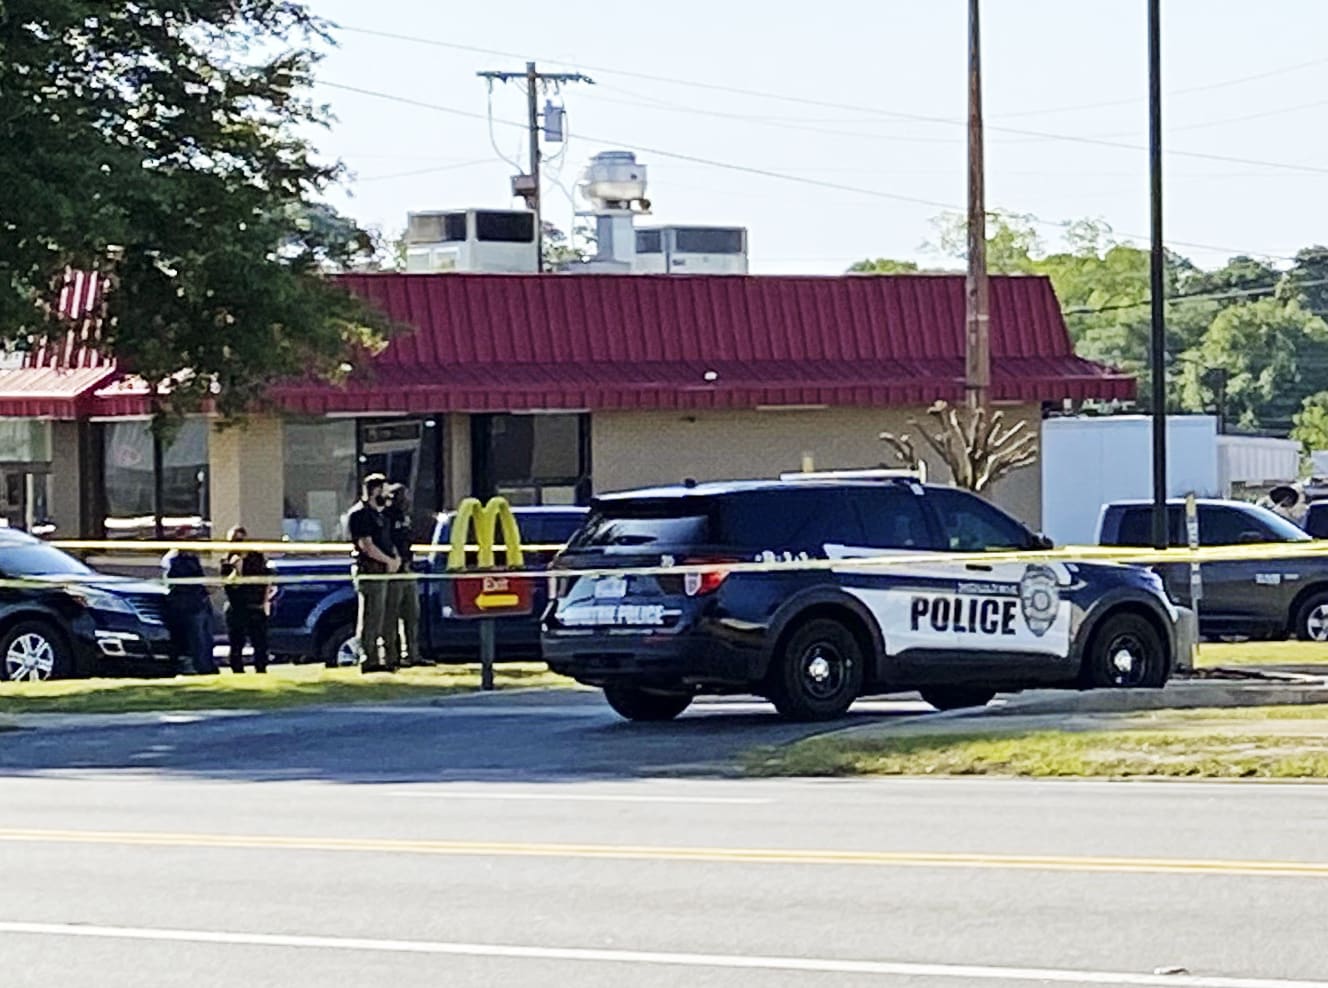 McDonald’s worker among 4 dead in Georgia homicide, coroner says